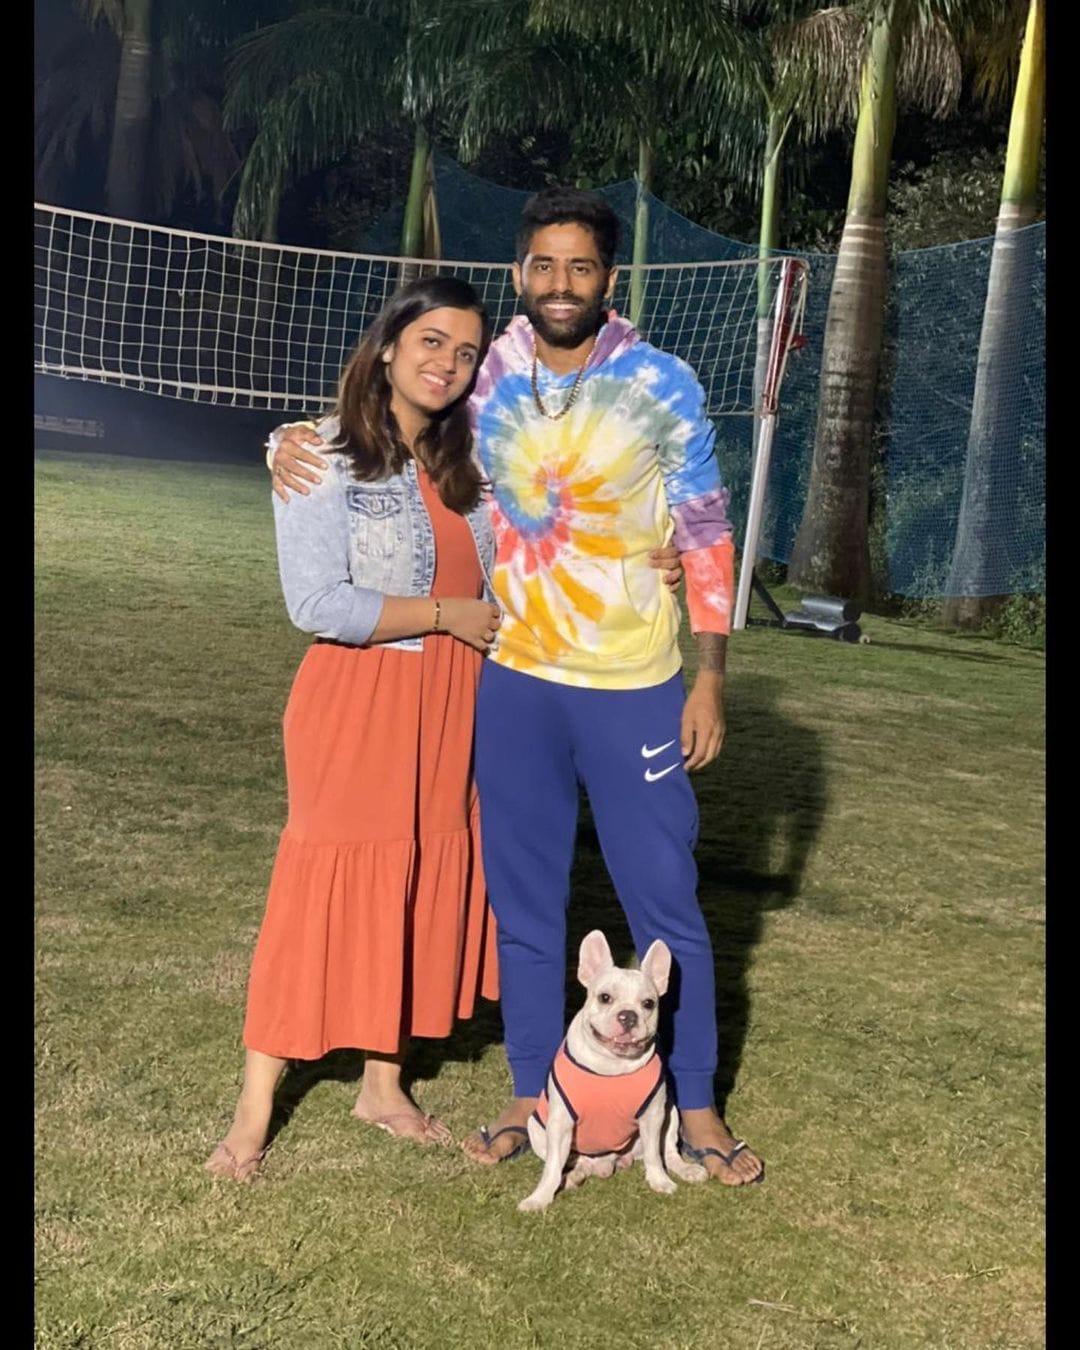  सूर्यकुमार यादव और देविशा शेट्टी दोनों ही इंस्टाग्राम पर एक्टिव रहते हैं और उनके द्वारा शेयर किए हुए फोटोज फैंस को बहुत ही ज्यादा पसंद आते हैं. सूर्यकुमार यादव टी20 वर्ल्ड कप 2022 के लिए भी टीम इंडिया में चुने गए हैं. (Photo Surya Instagram)